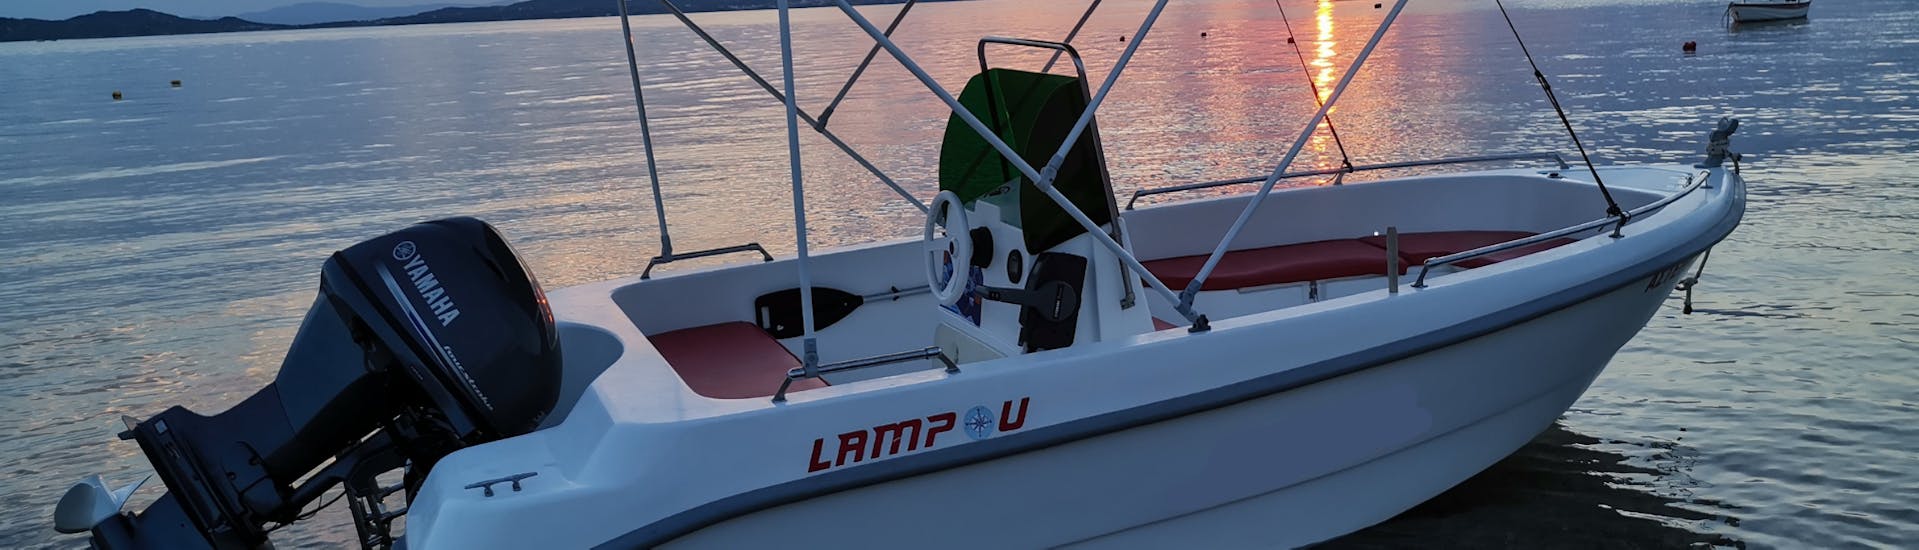 El barco con la hermosa puesta de sol griega durante el Alquiler de Barcos en Ouranoupoli (hasta 6 personas) sin Licencia con Rent a Boat Lampou.